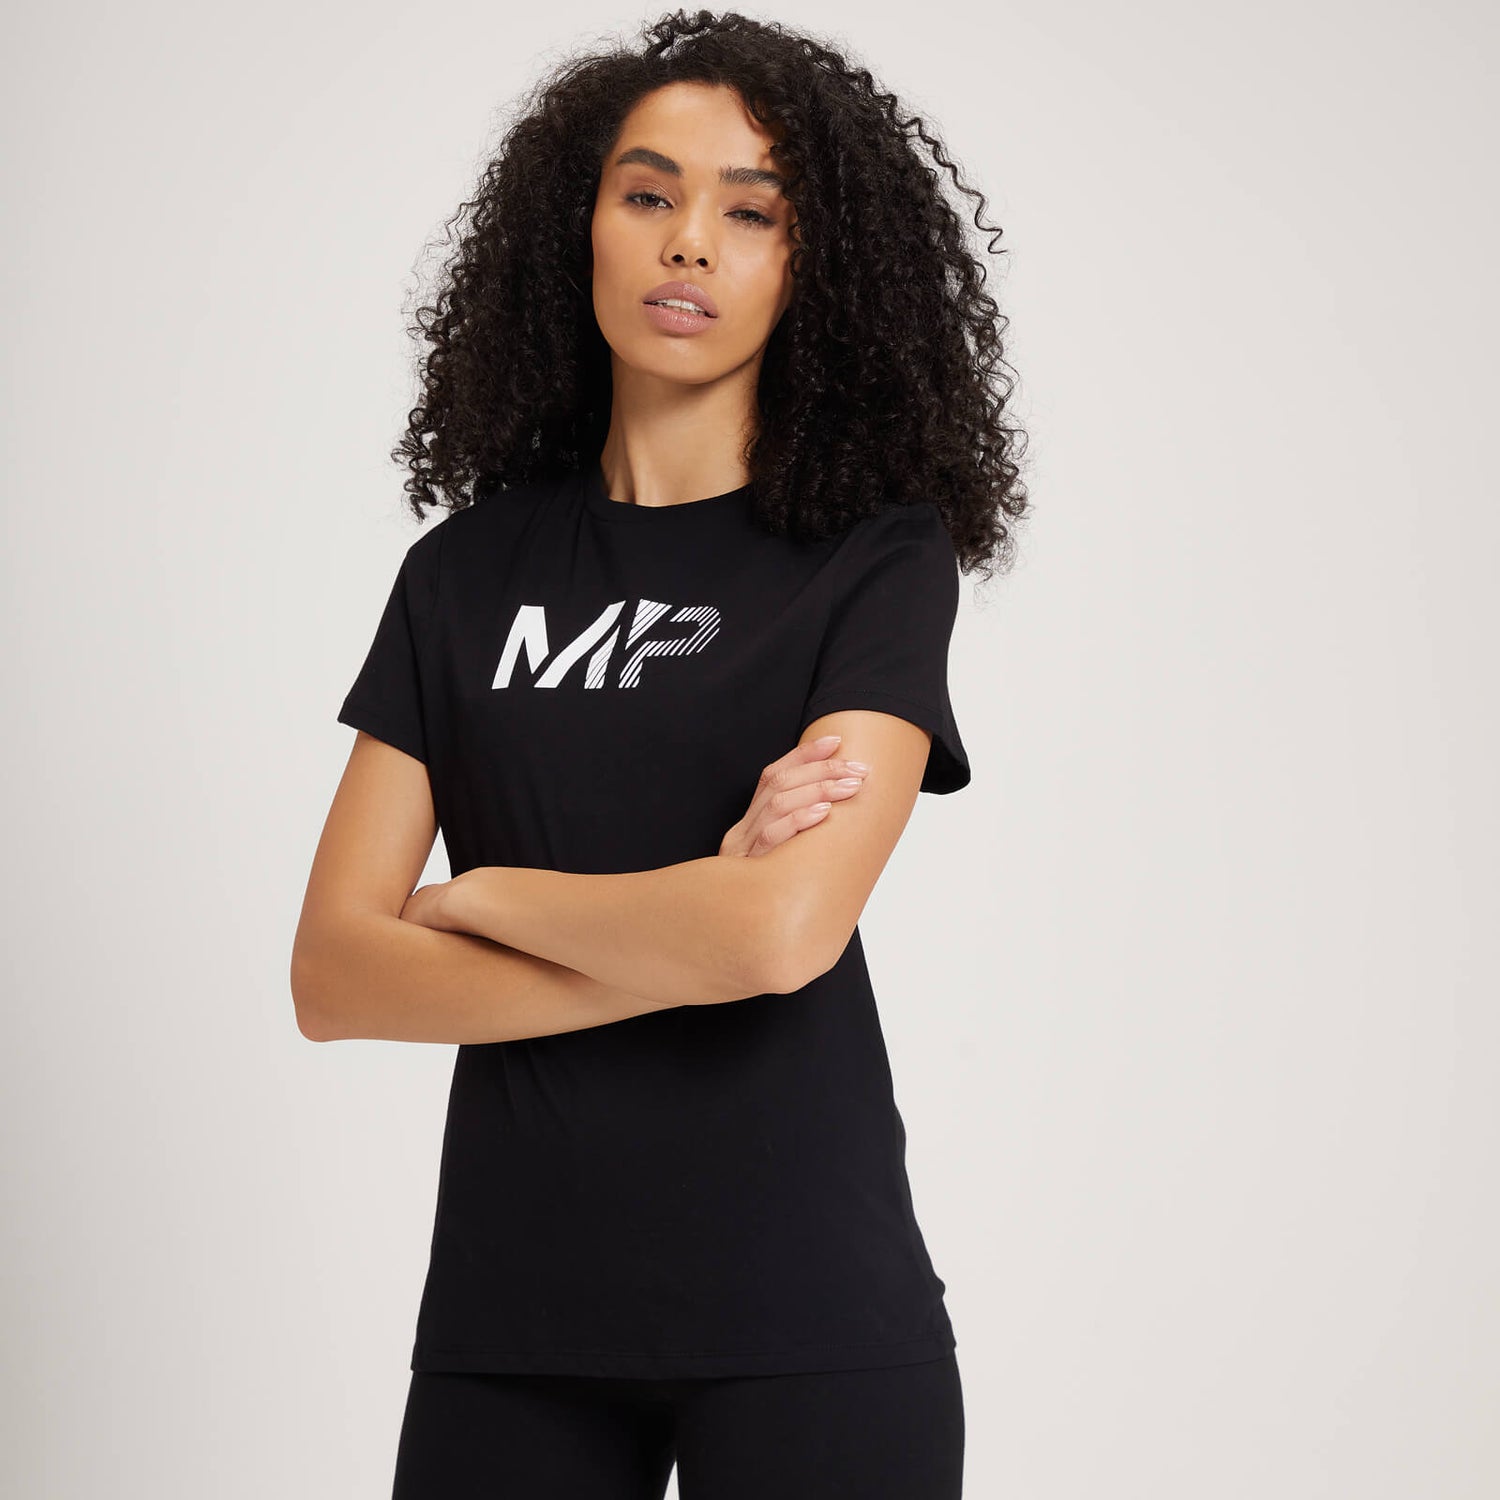 Camiseta con estampado gráfico gradual para mujer de MP - Negro